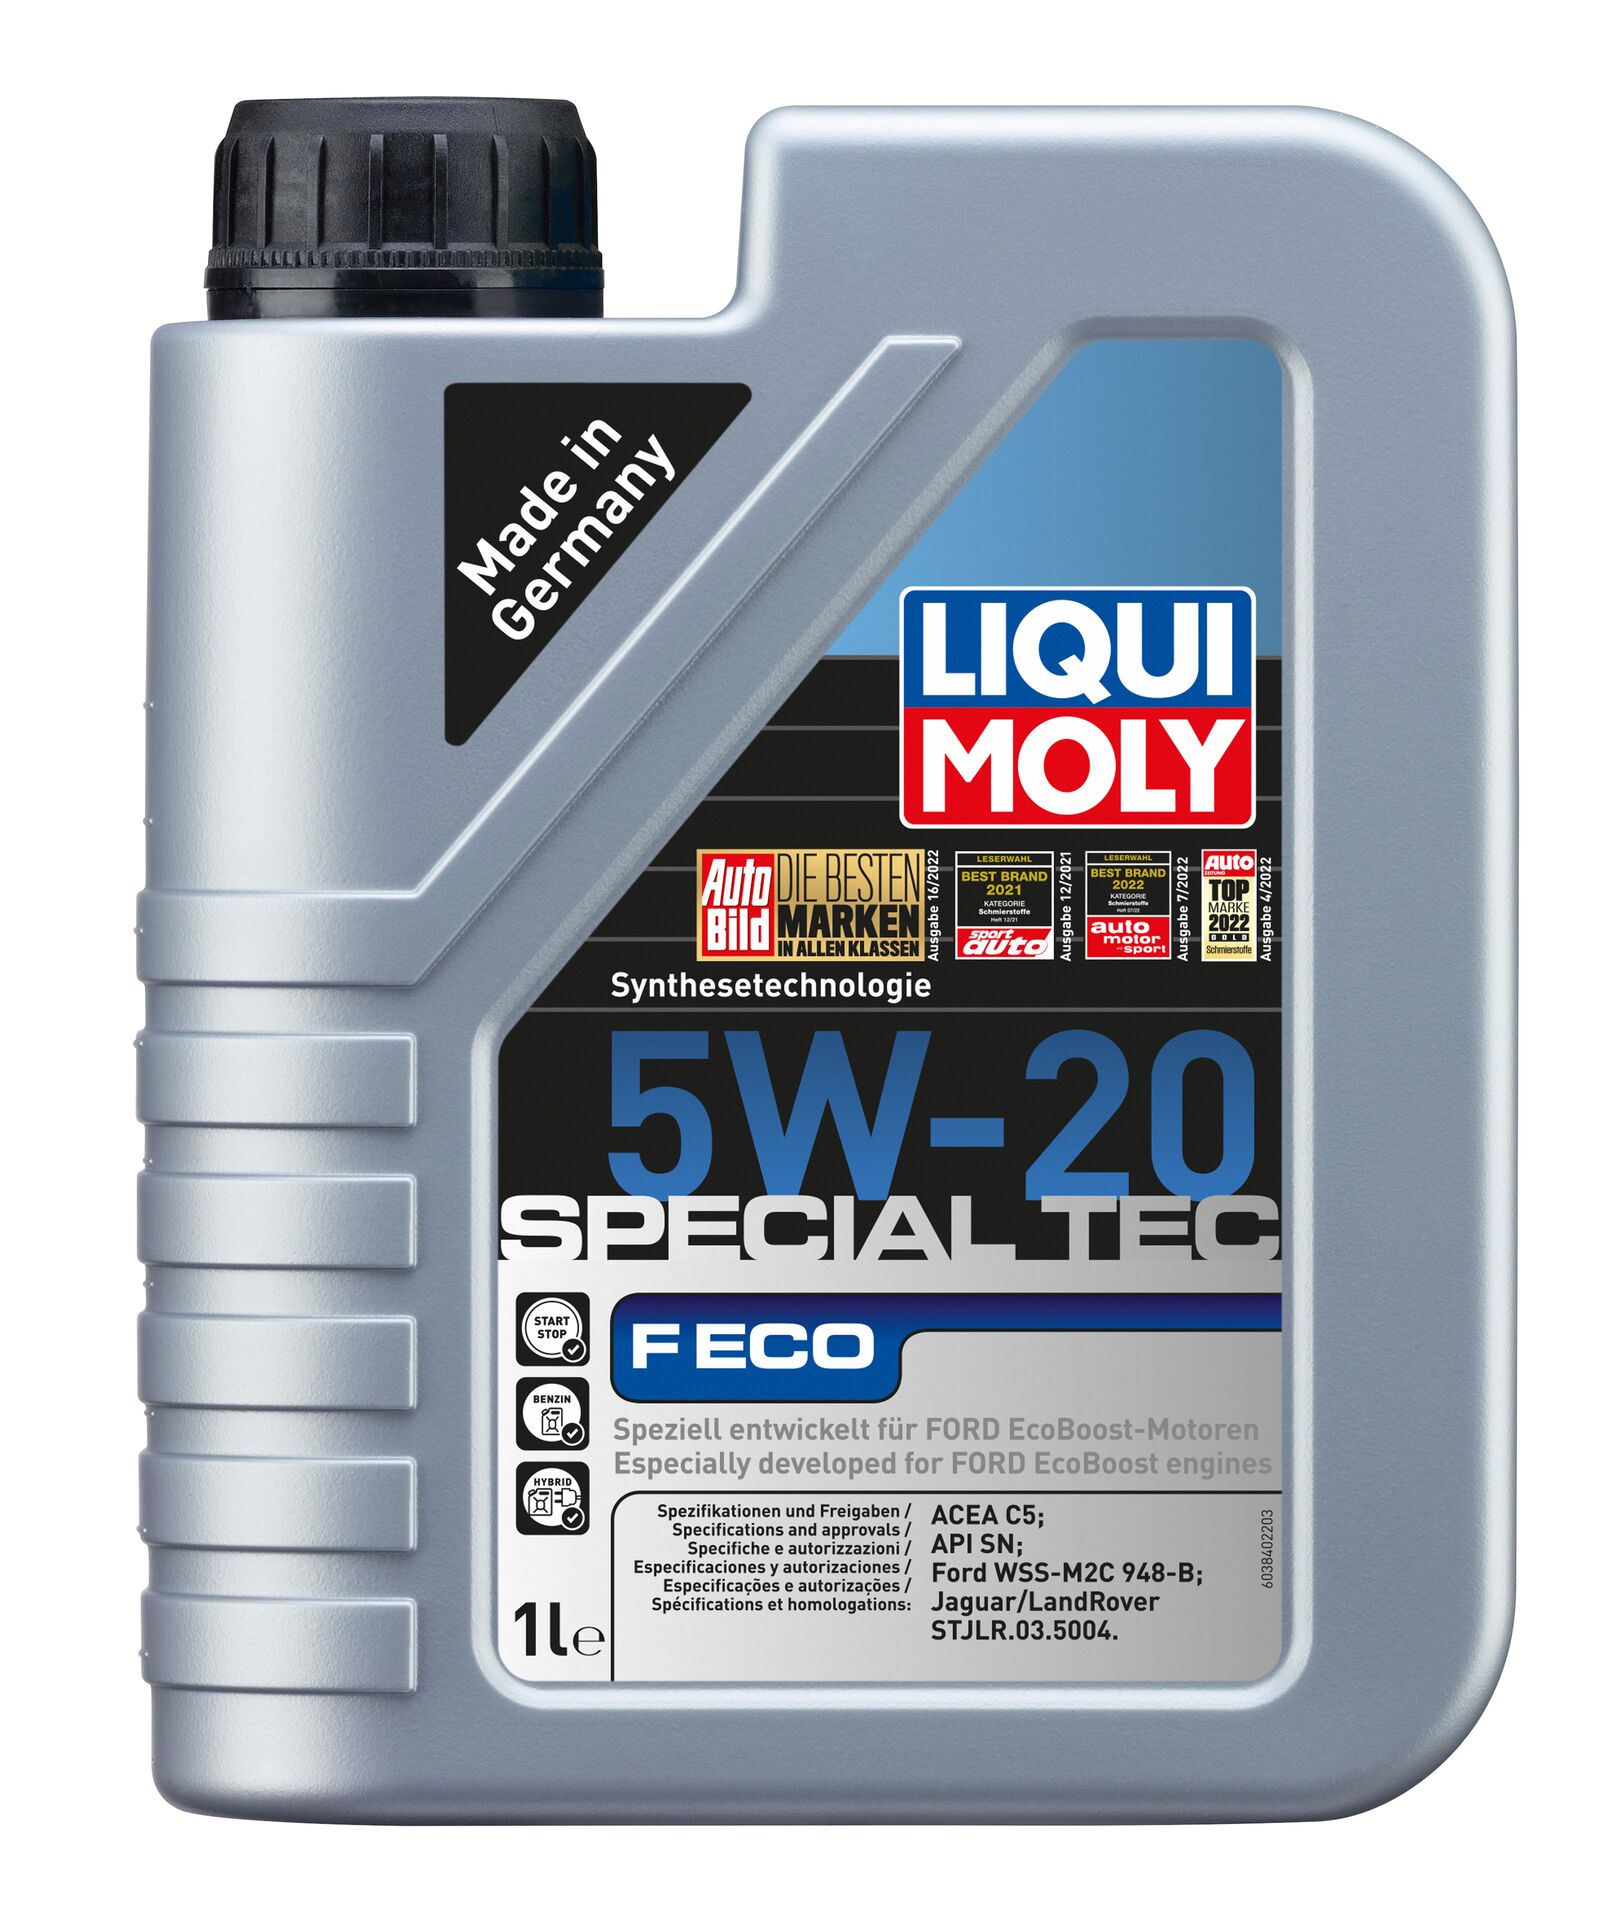 Liqui Moly Motoröl Special Tec F ECO 5W-20 für Ford Eco Boost-Motoren 1L